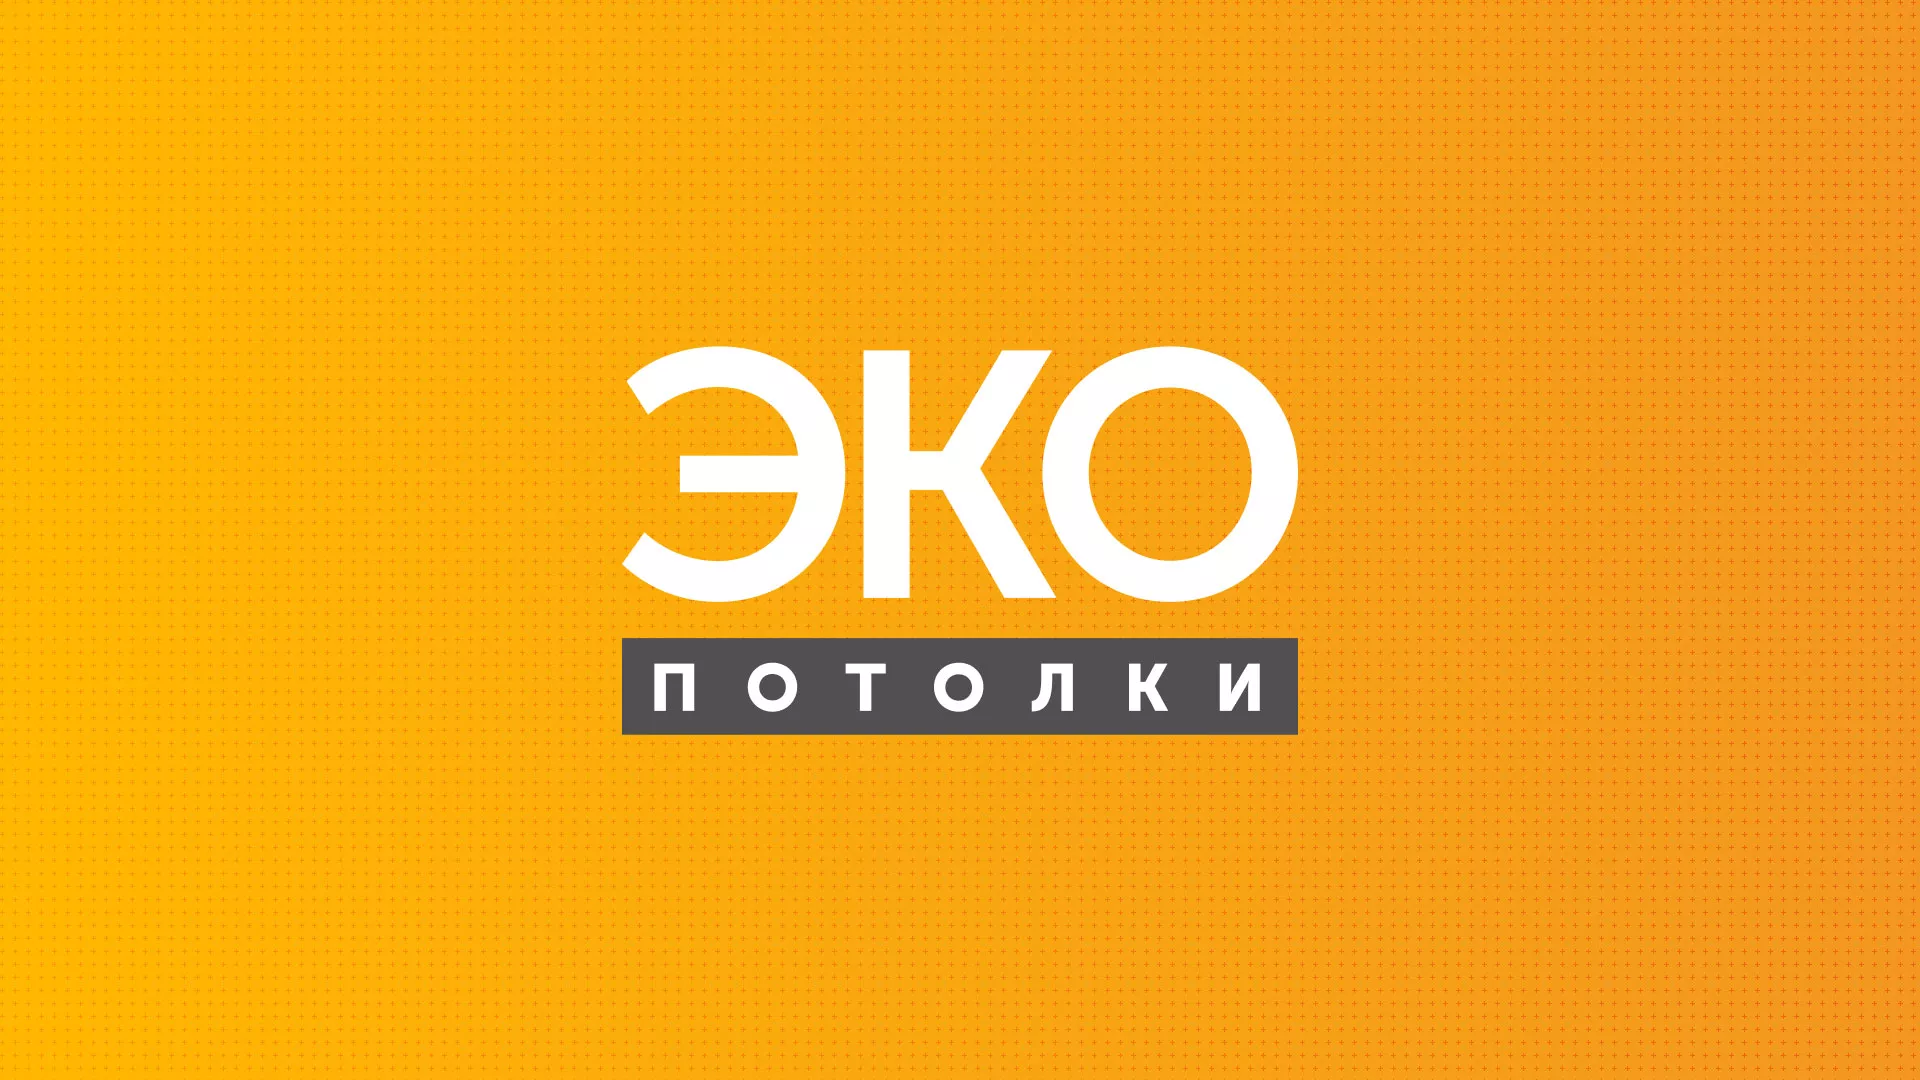 Разработка сайта по натяжным потолкам «Эко Потолки» в Ликино-Дулево